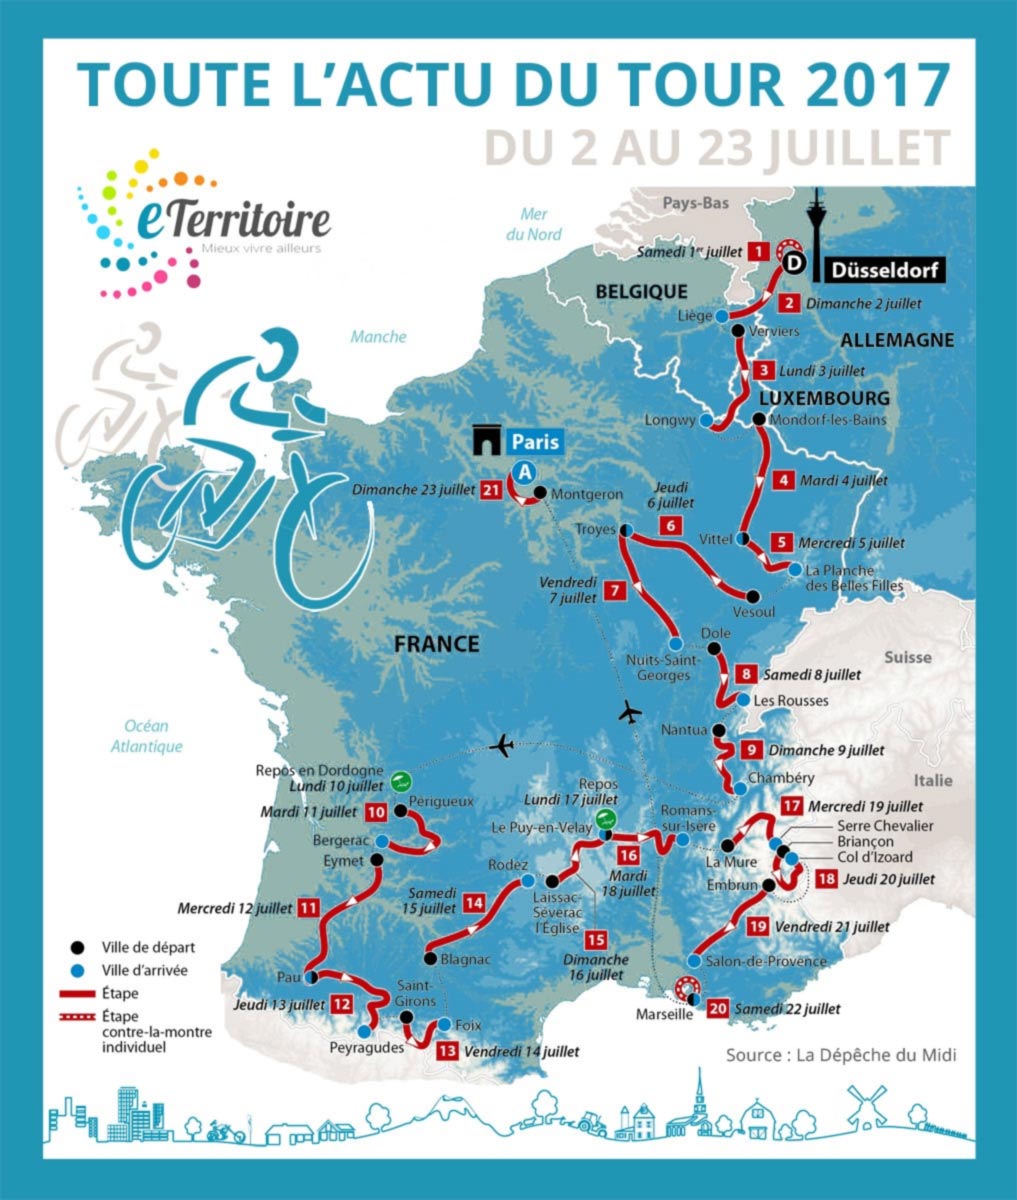 Tour de France 2017 - Carrère - Passage d'étape